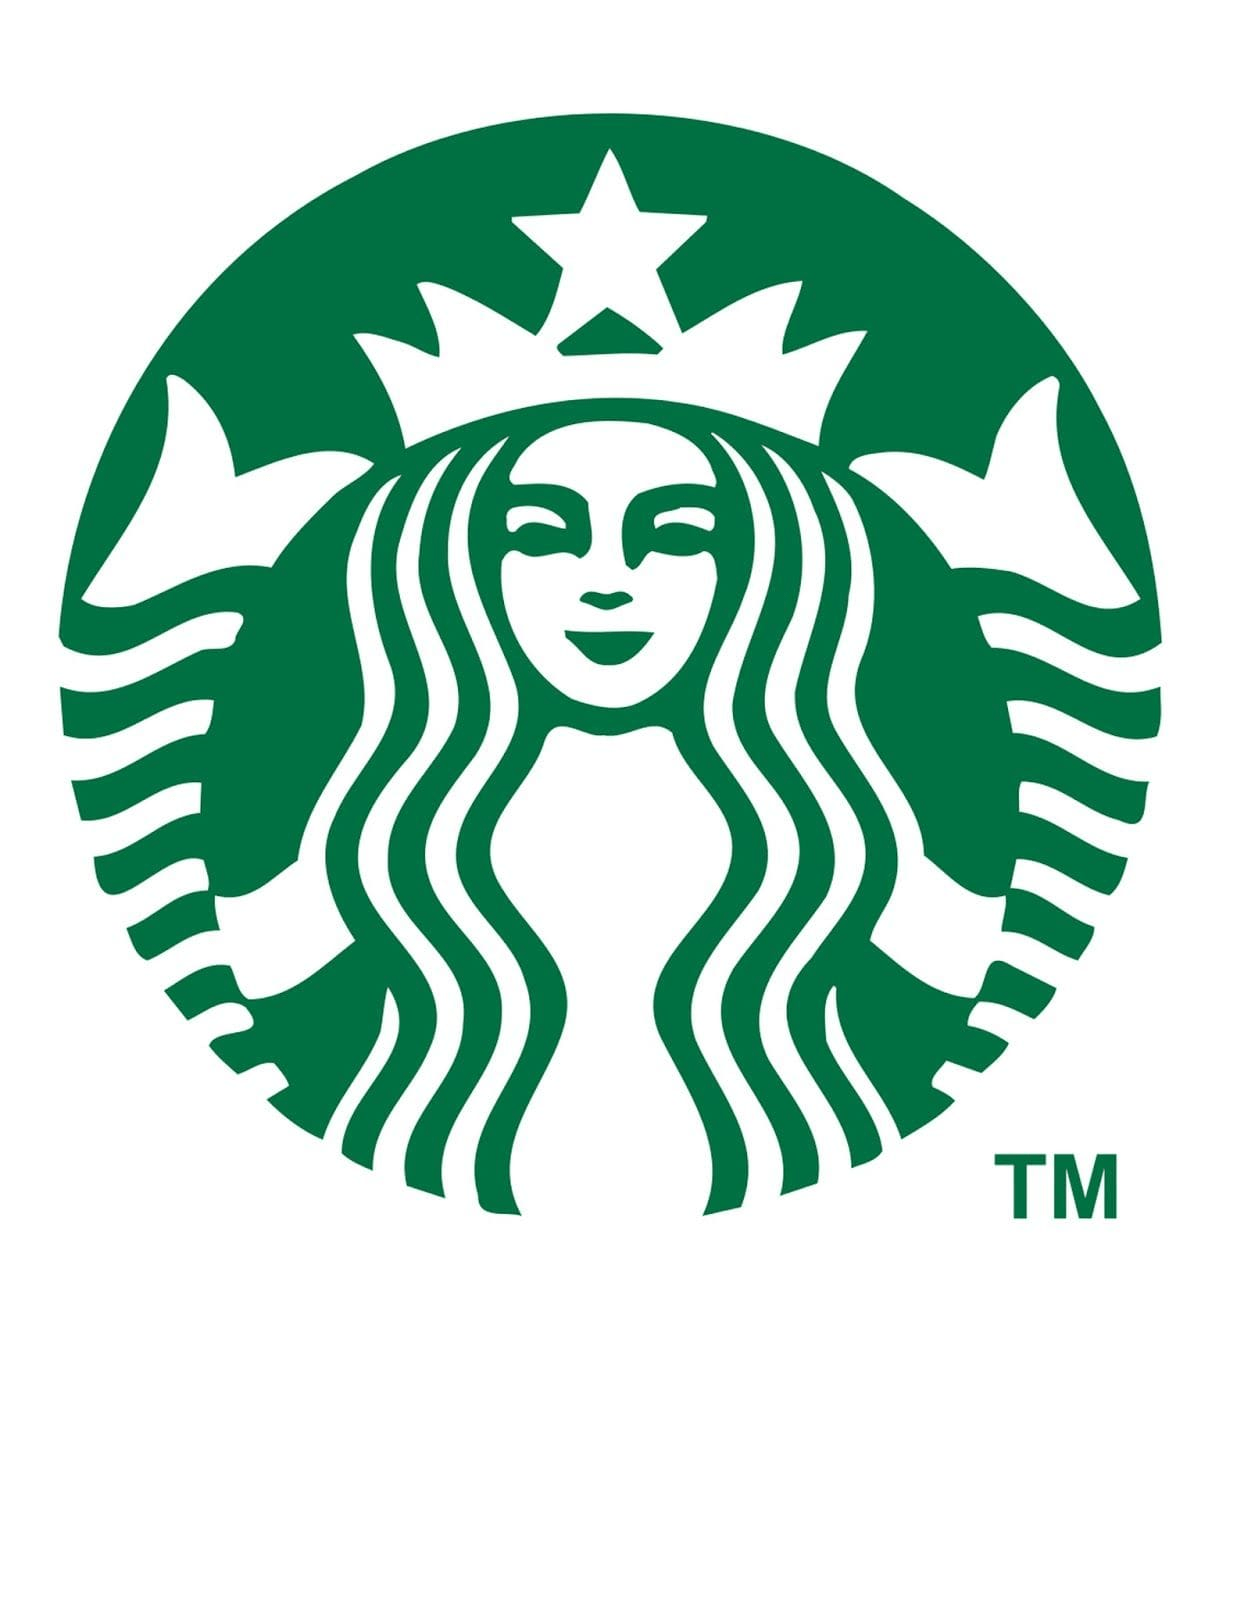 Starbucks logo design